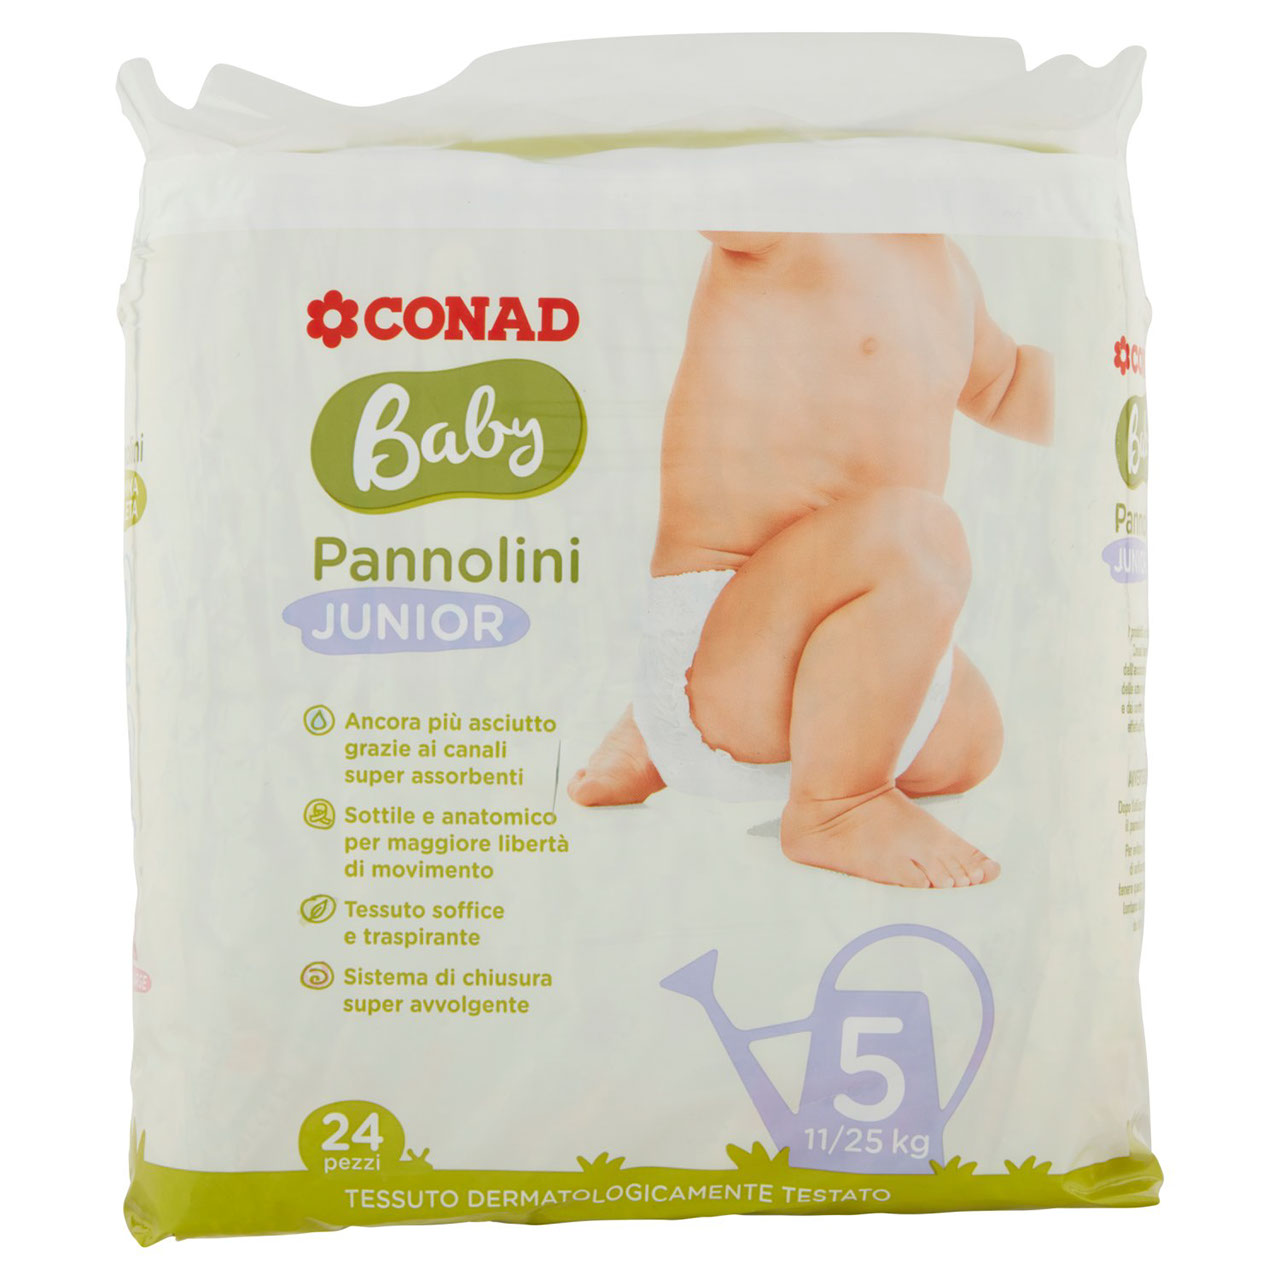 Baby Pannolini Junior 5 11/25 kg 24 pezzi Conad